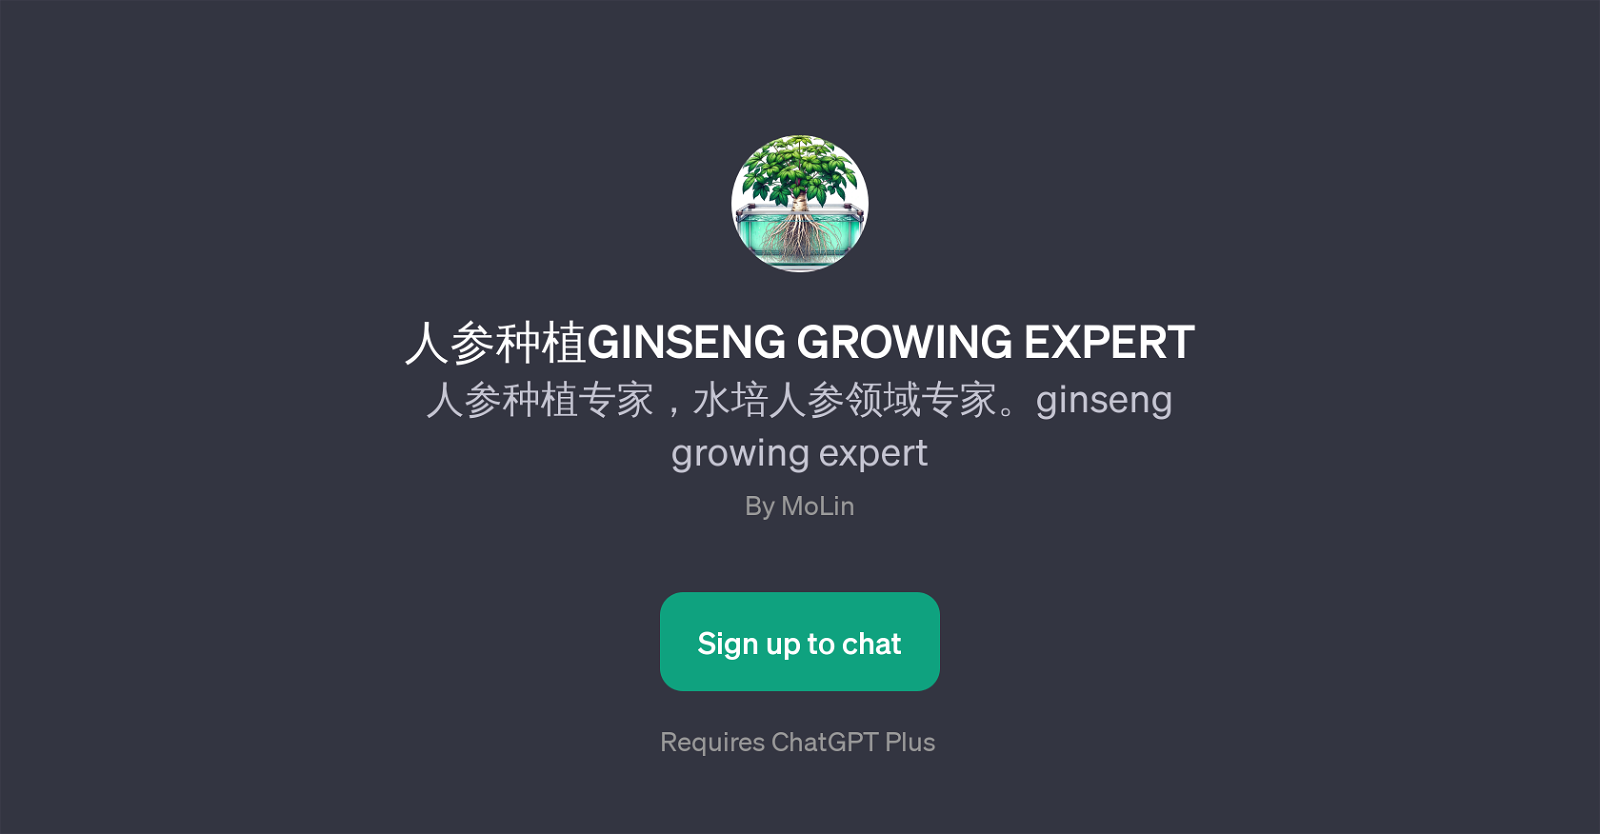 Ginseng Growing Expert website